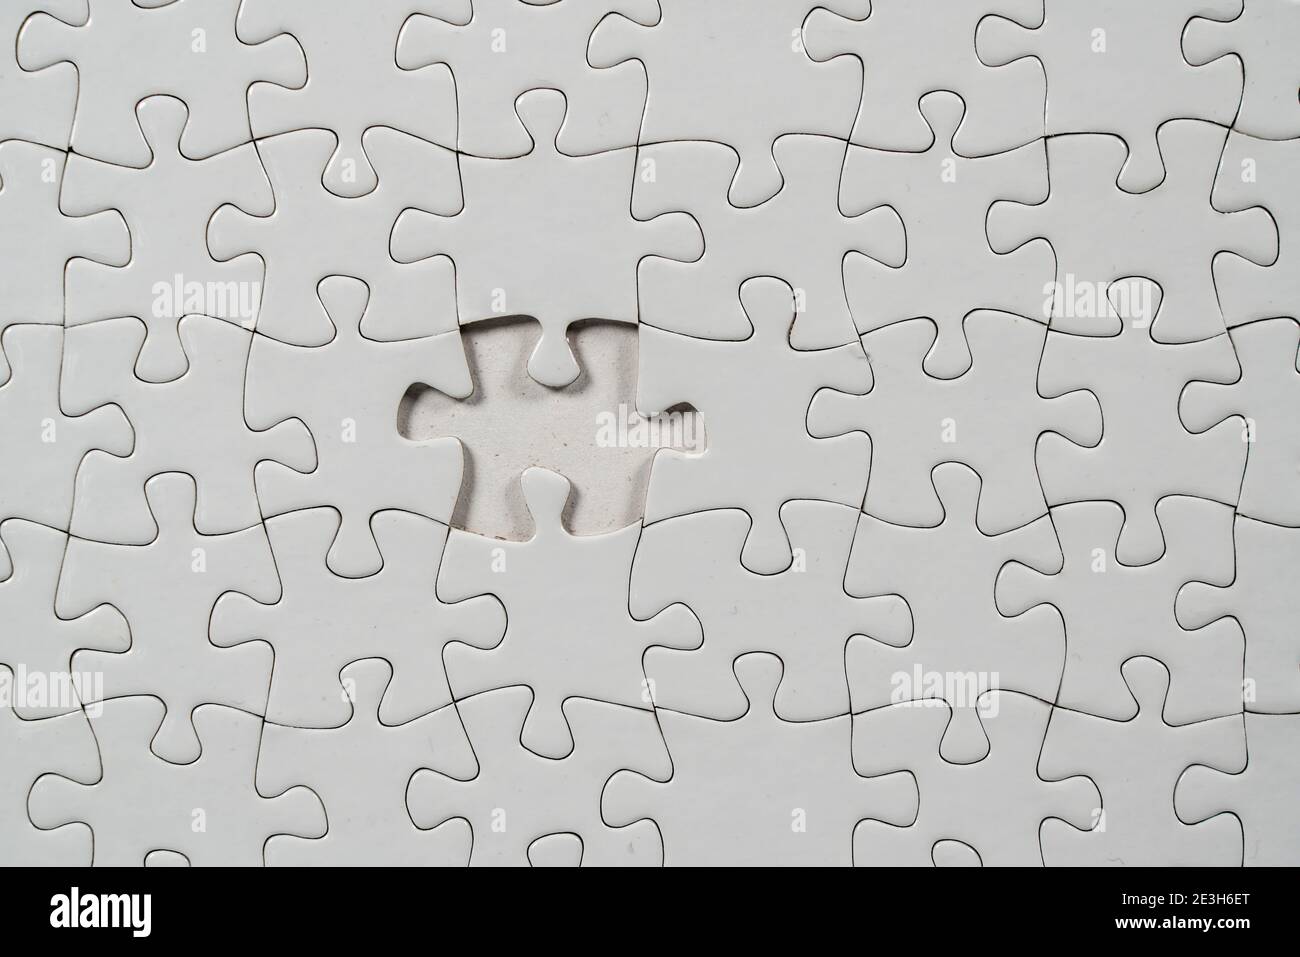 Puzzle-Spiel, leer, weiß, ohne Motiv, zum Drucken, ein Stück fehlt  Stockfotografie - Alamy